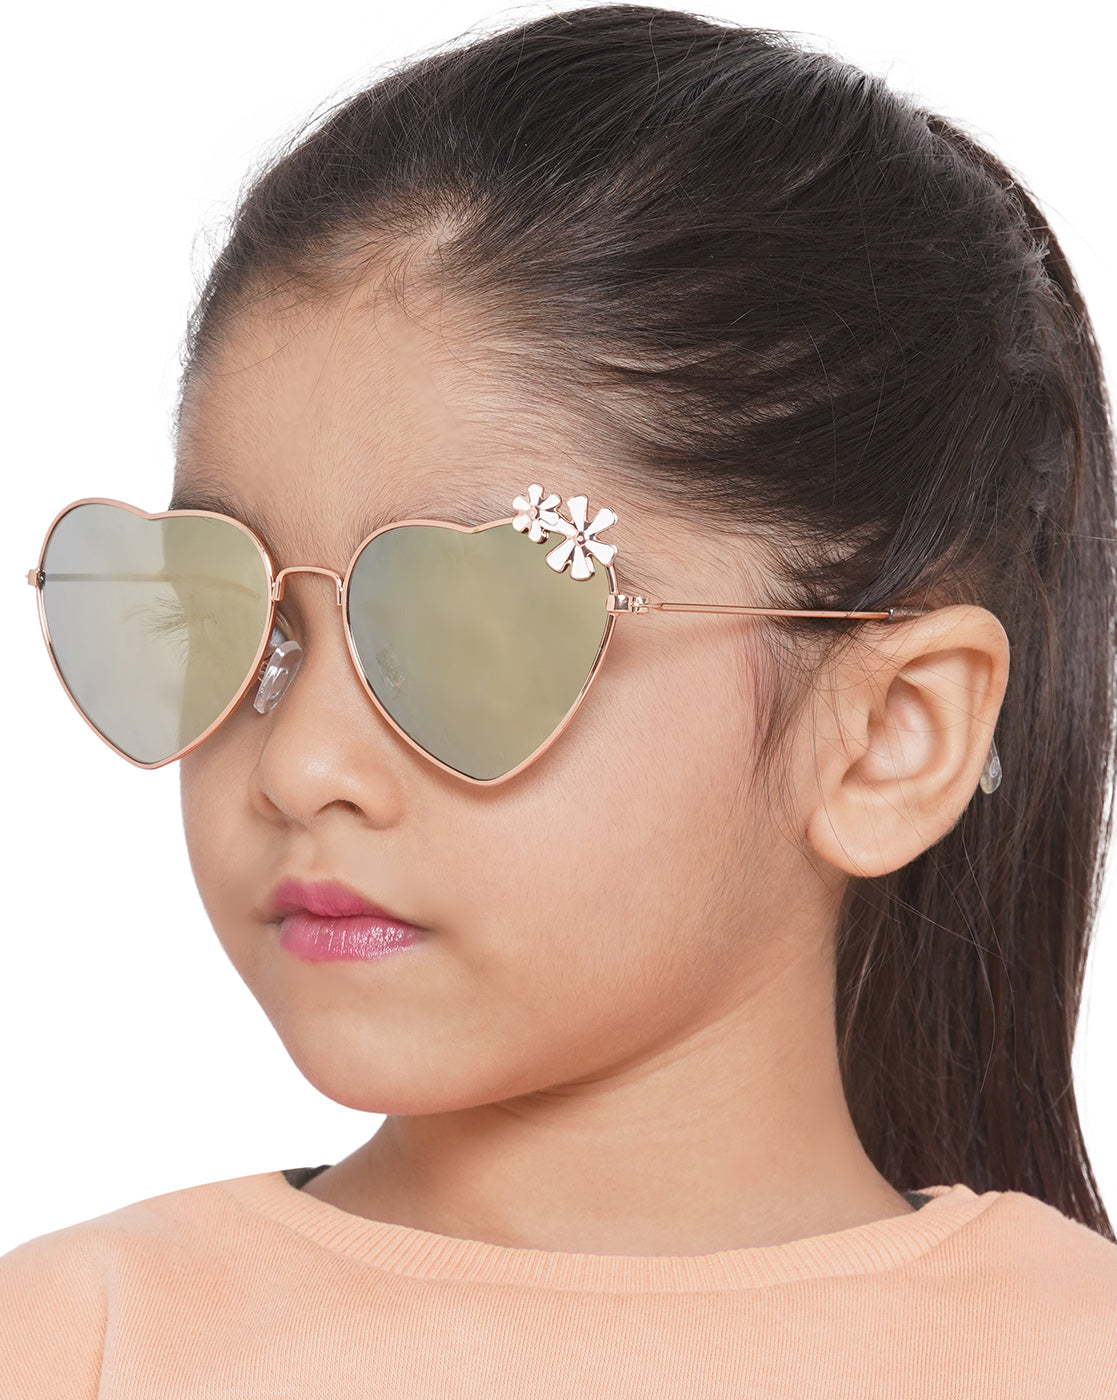 Carlton London Mirrored Lens &amp; Gold-Toned Heart Shape Sunglasses For Girl